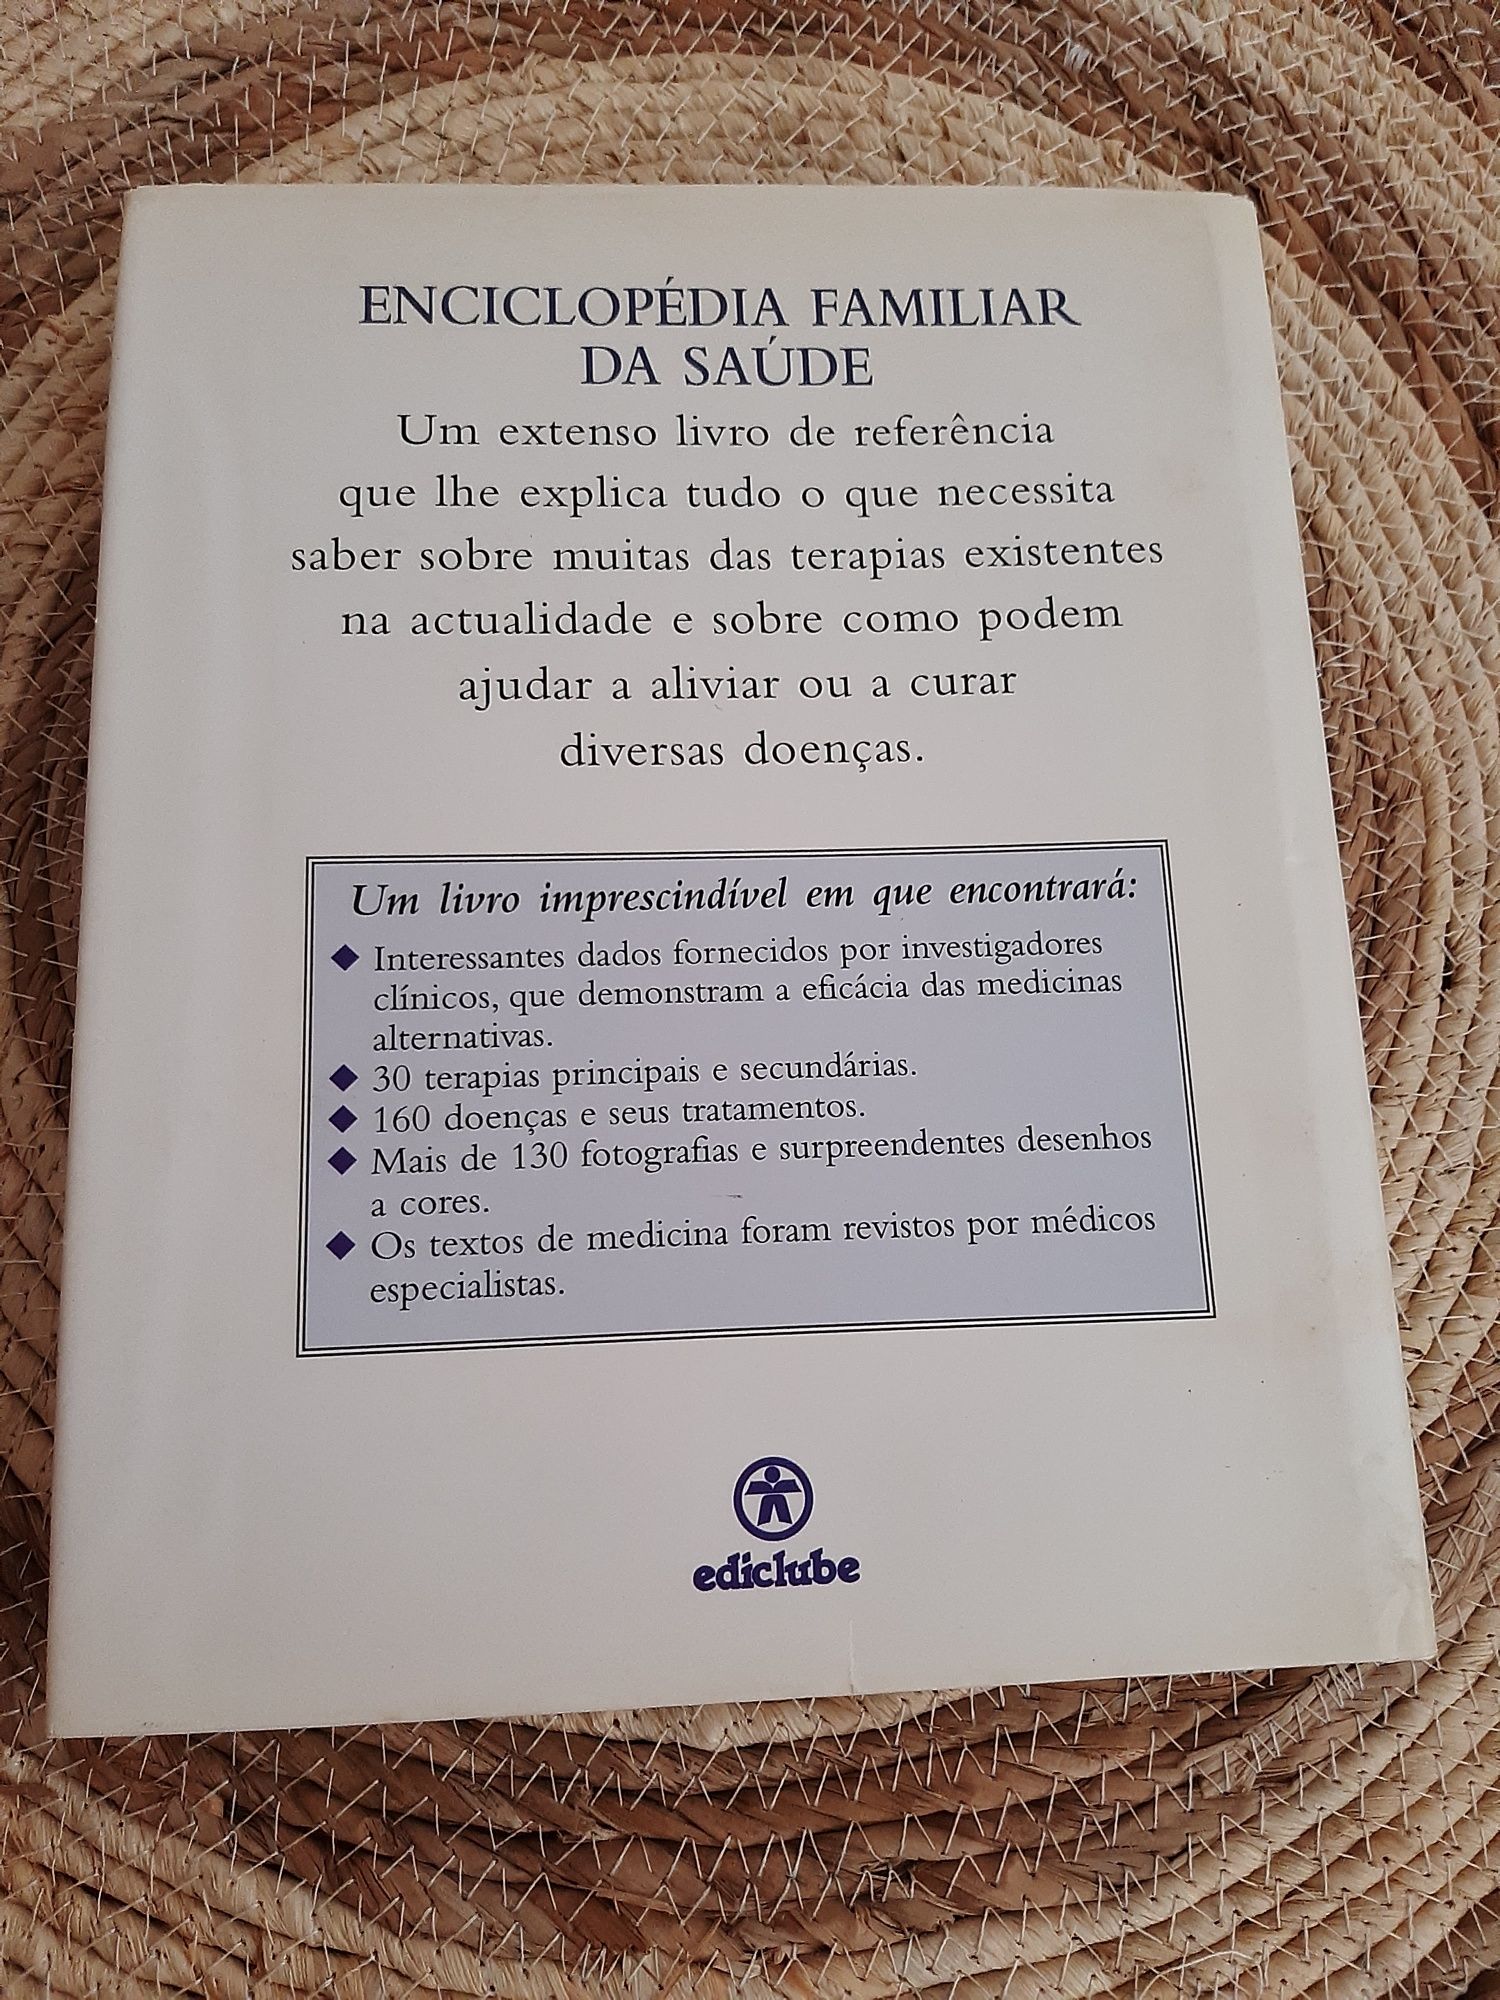 Enciclopédia familiar da saúde